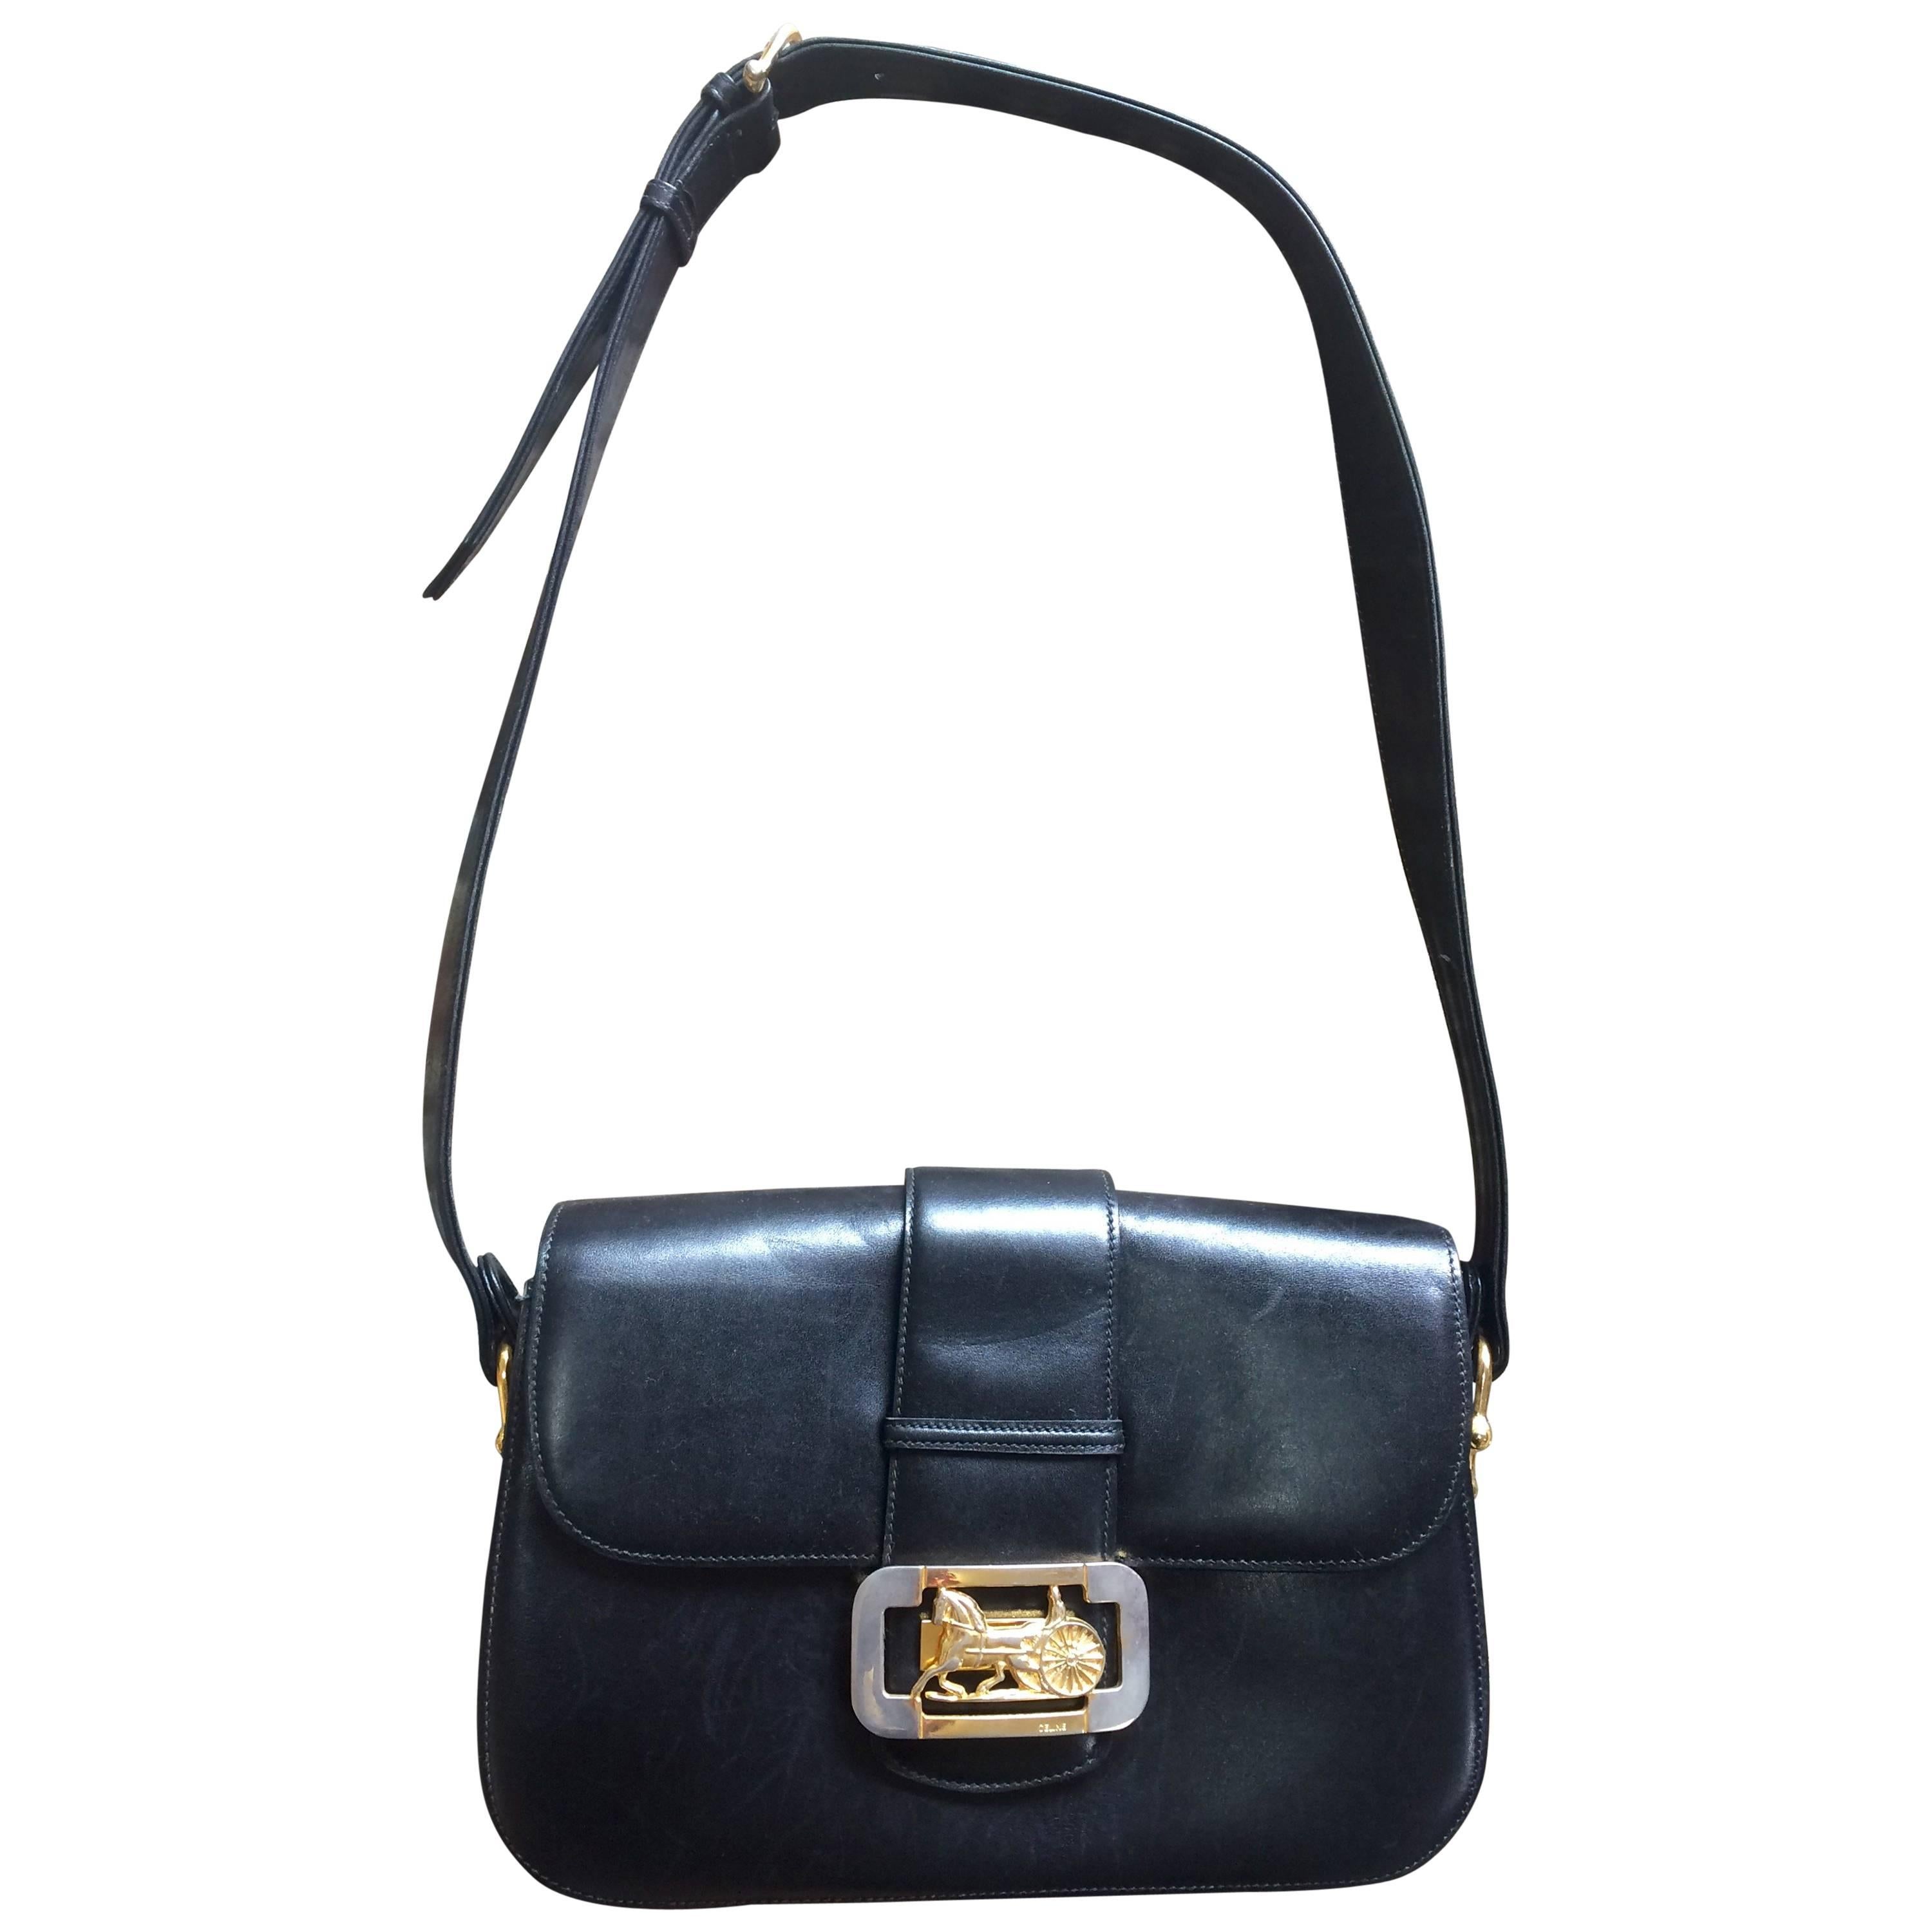 Vintage Celine black leather classic shoulder bag with golden logo closure.